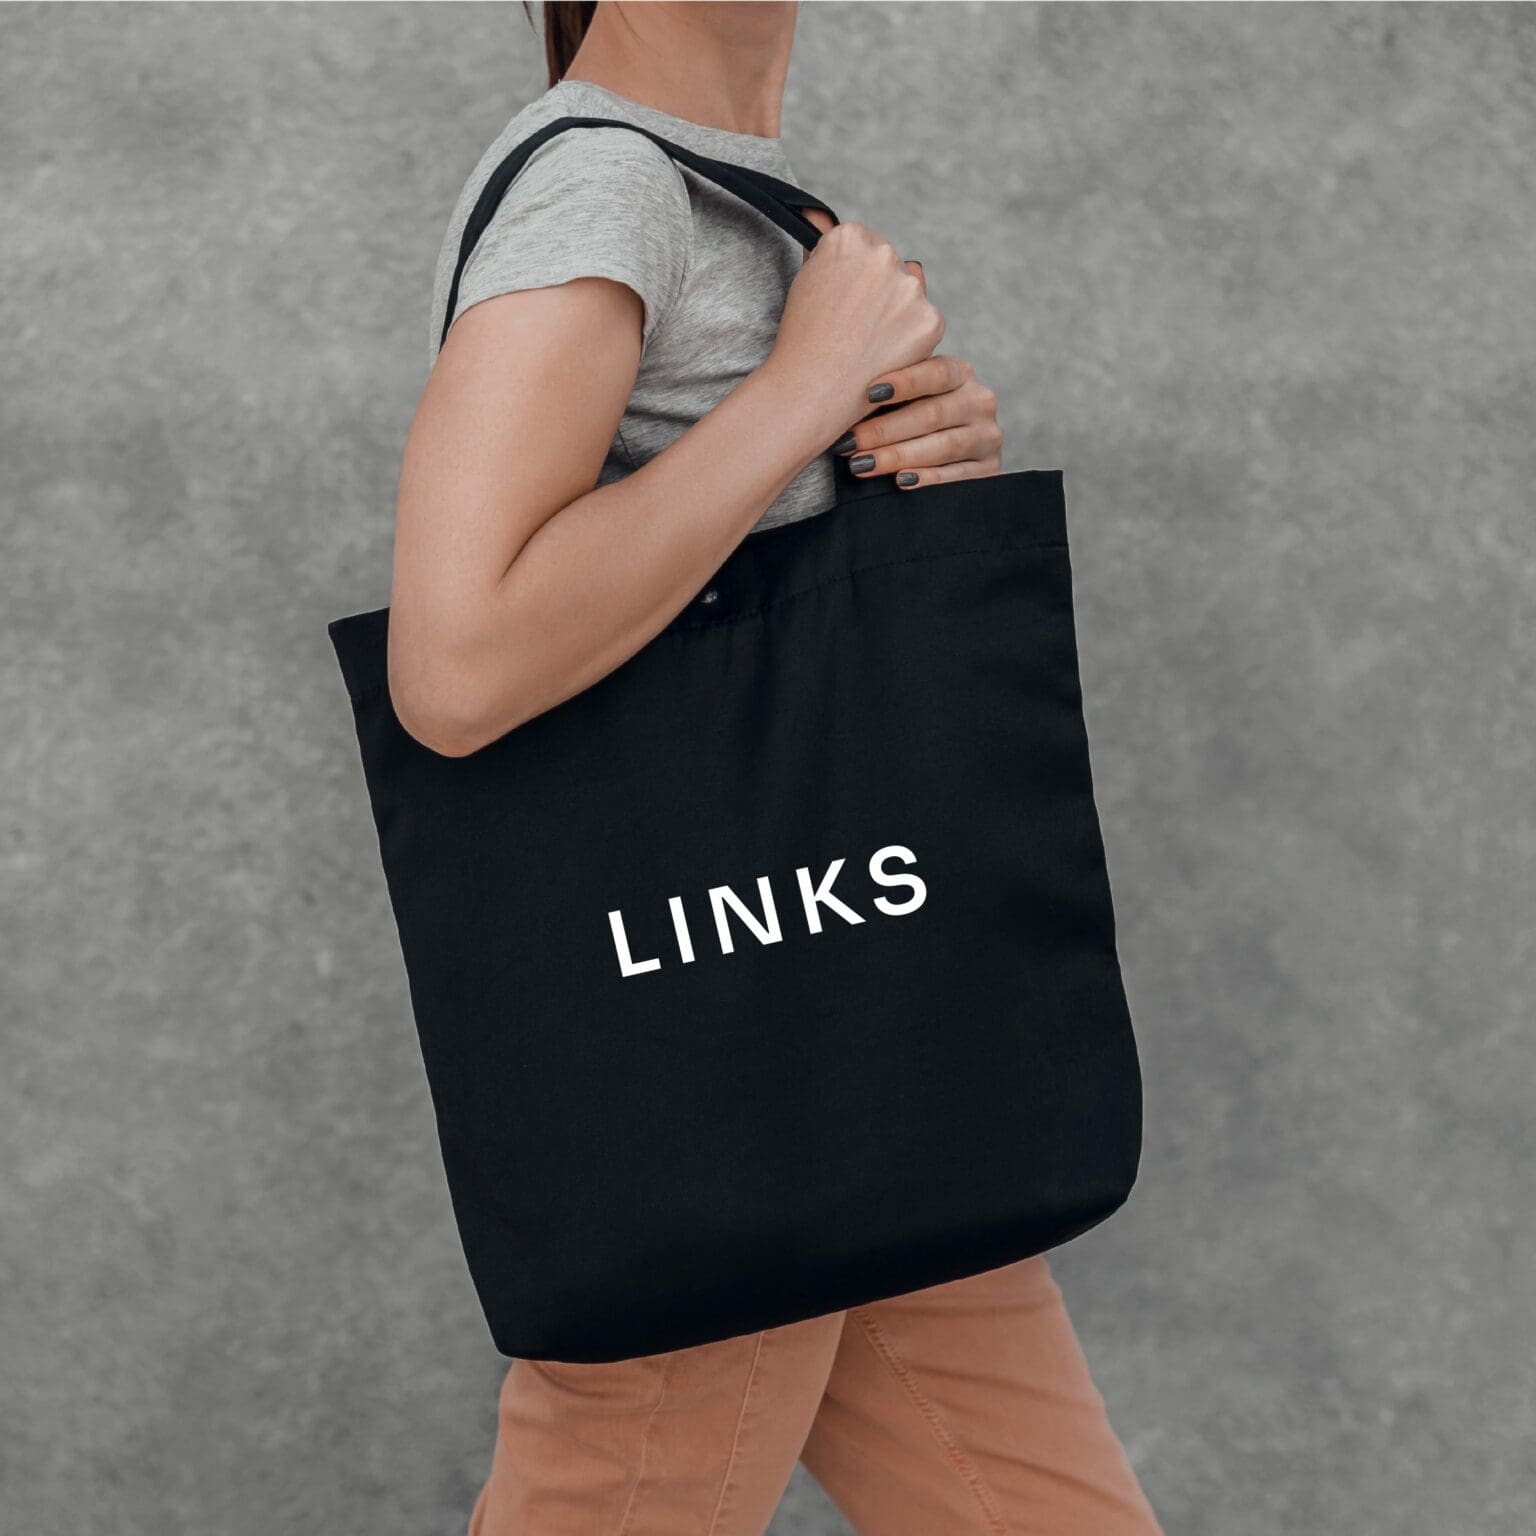 Links Recruitment Group Brand Design Assets